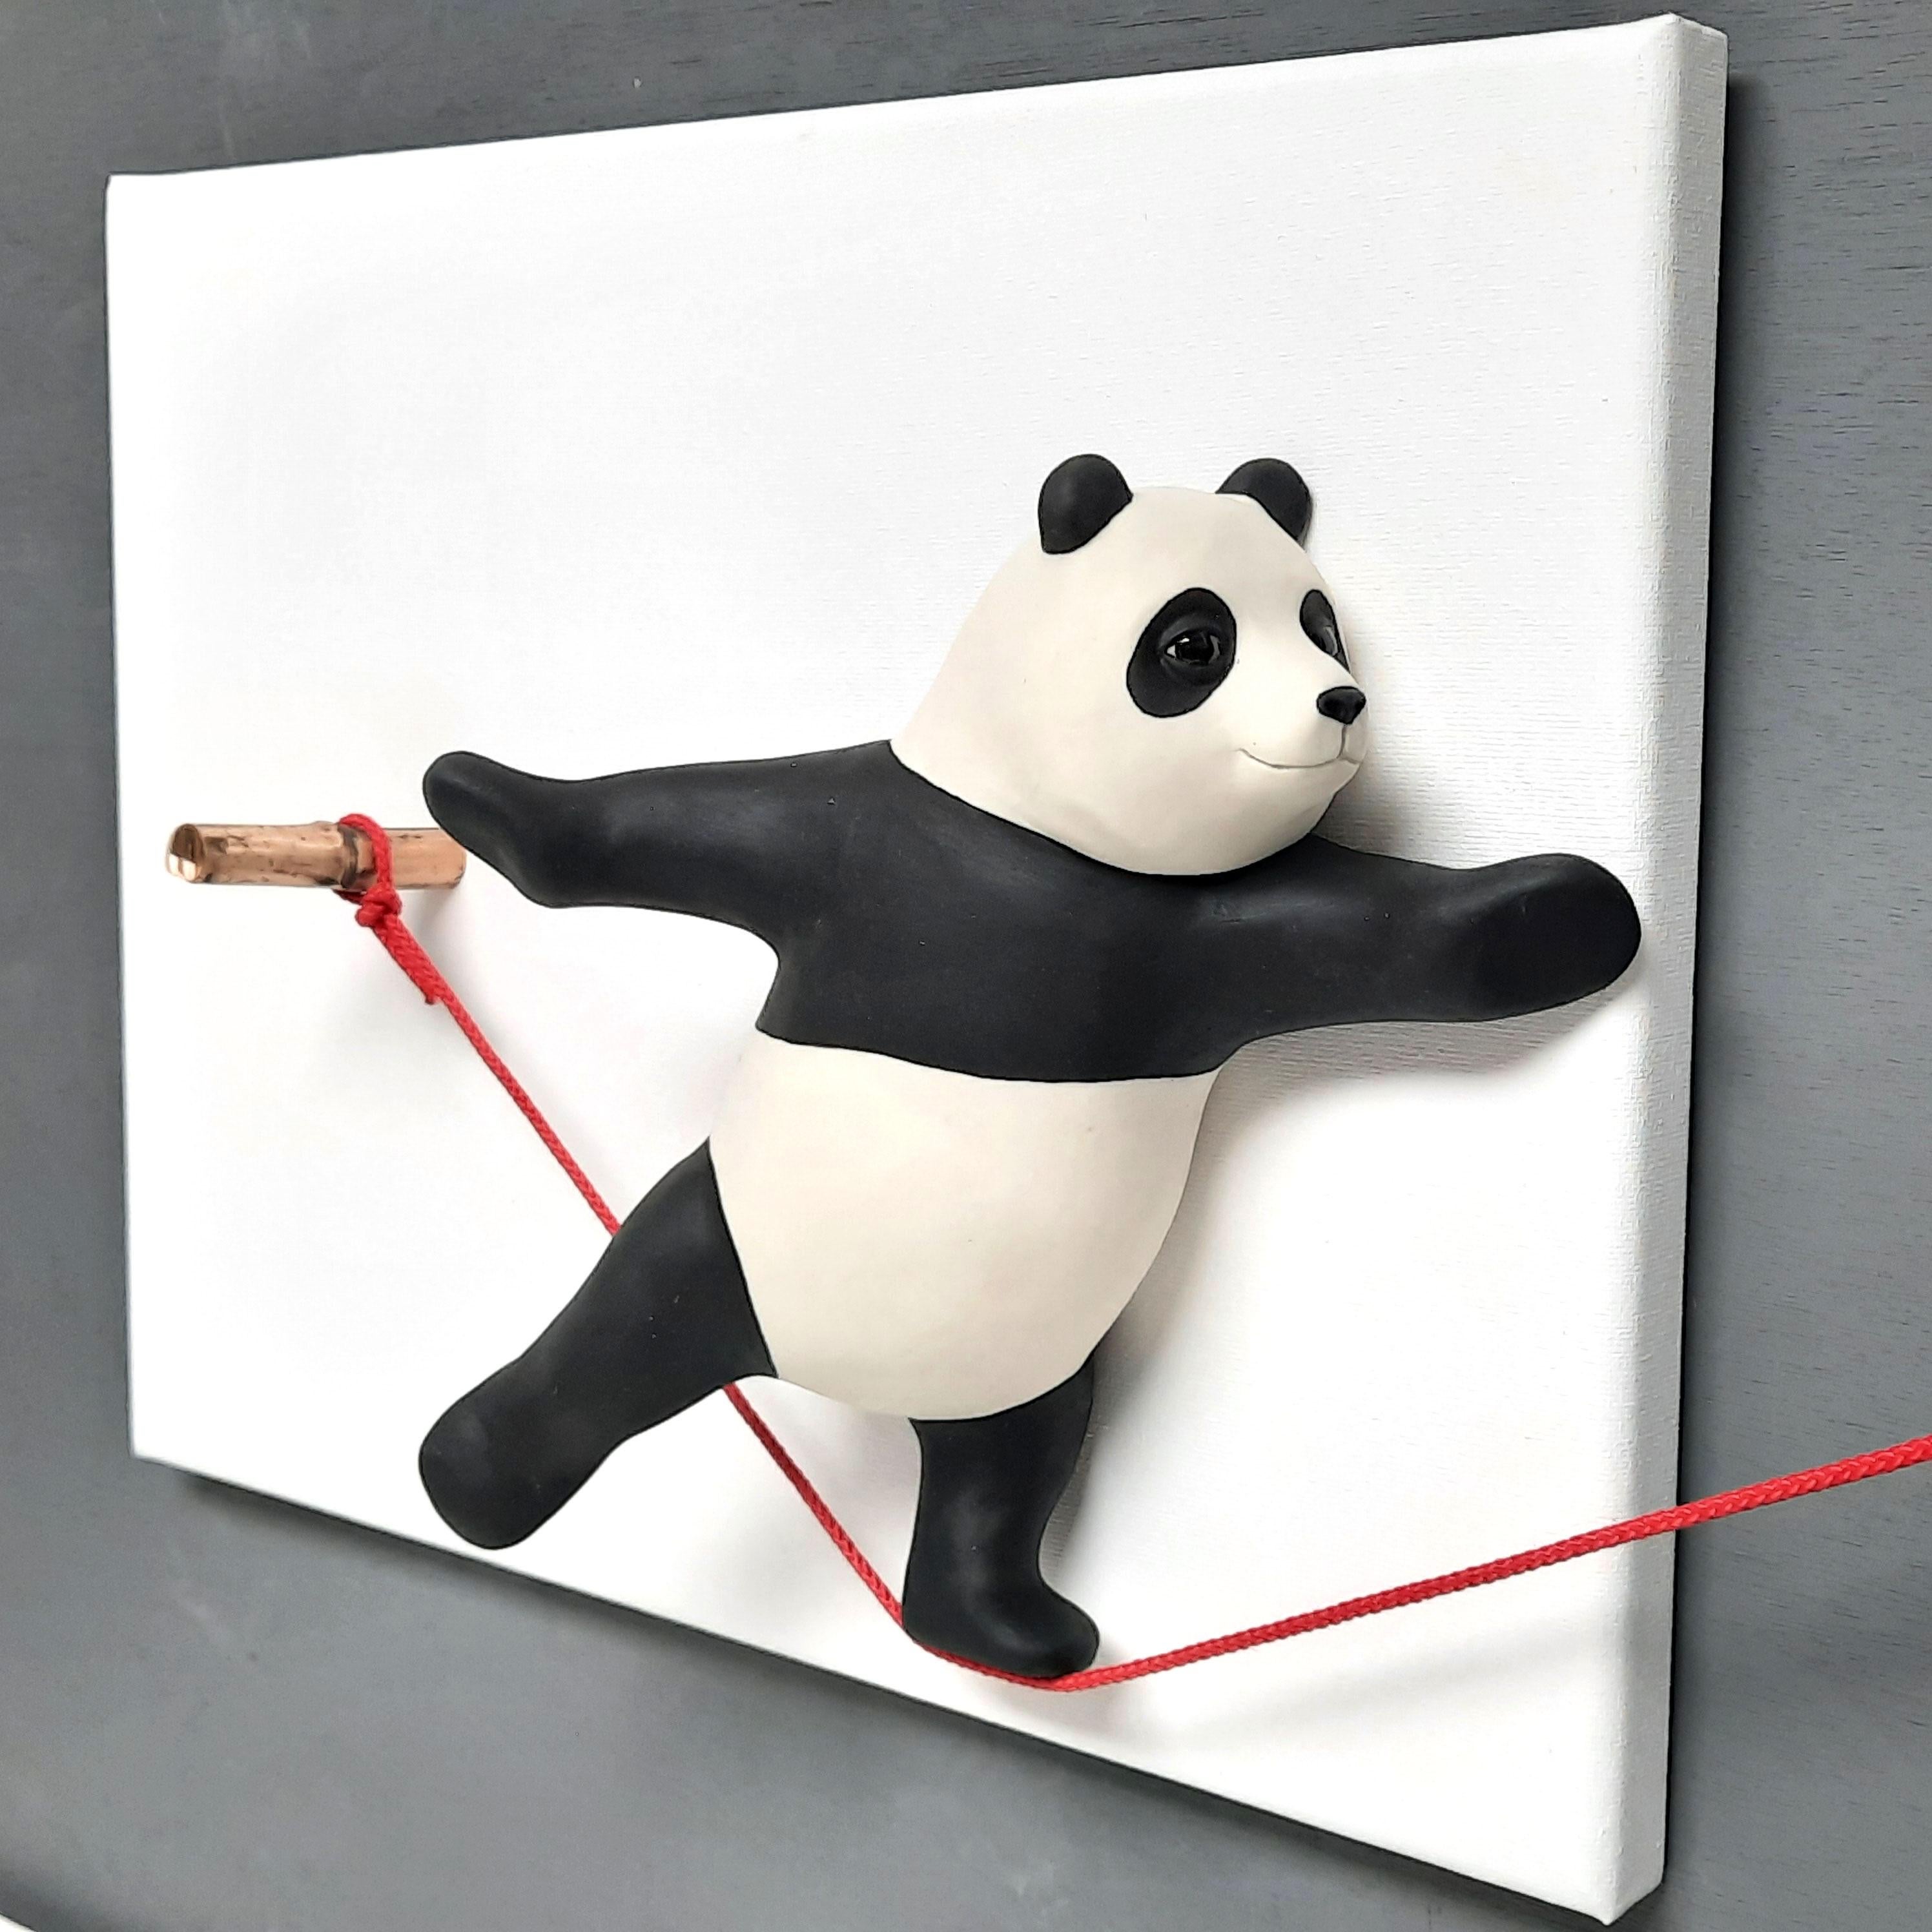 Leap of Faith II - originale Panda-Skulptur in freier Wildbahn - Gemälde - zeitgenössische Kunst (Zeitgenössisch), Painting, von Henk Jan Sanderman